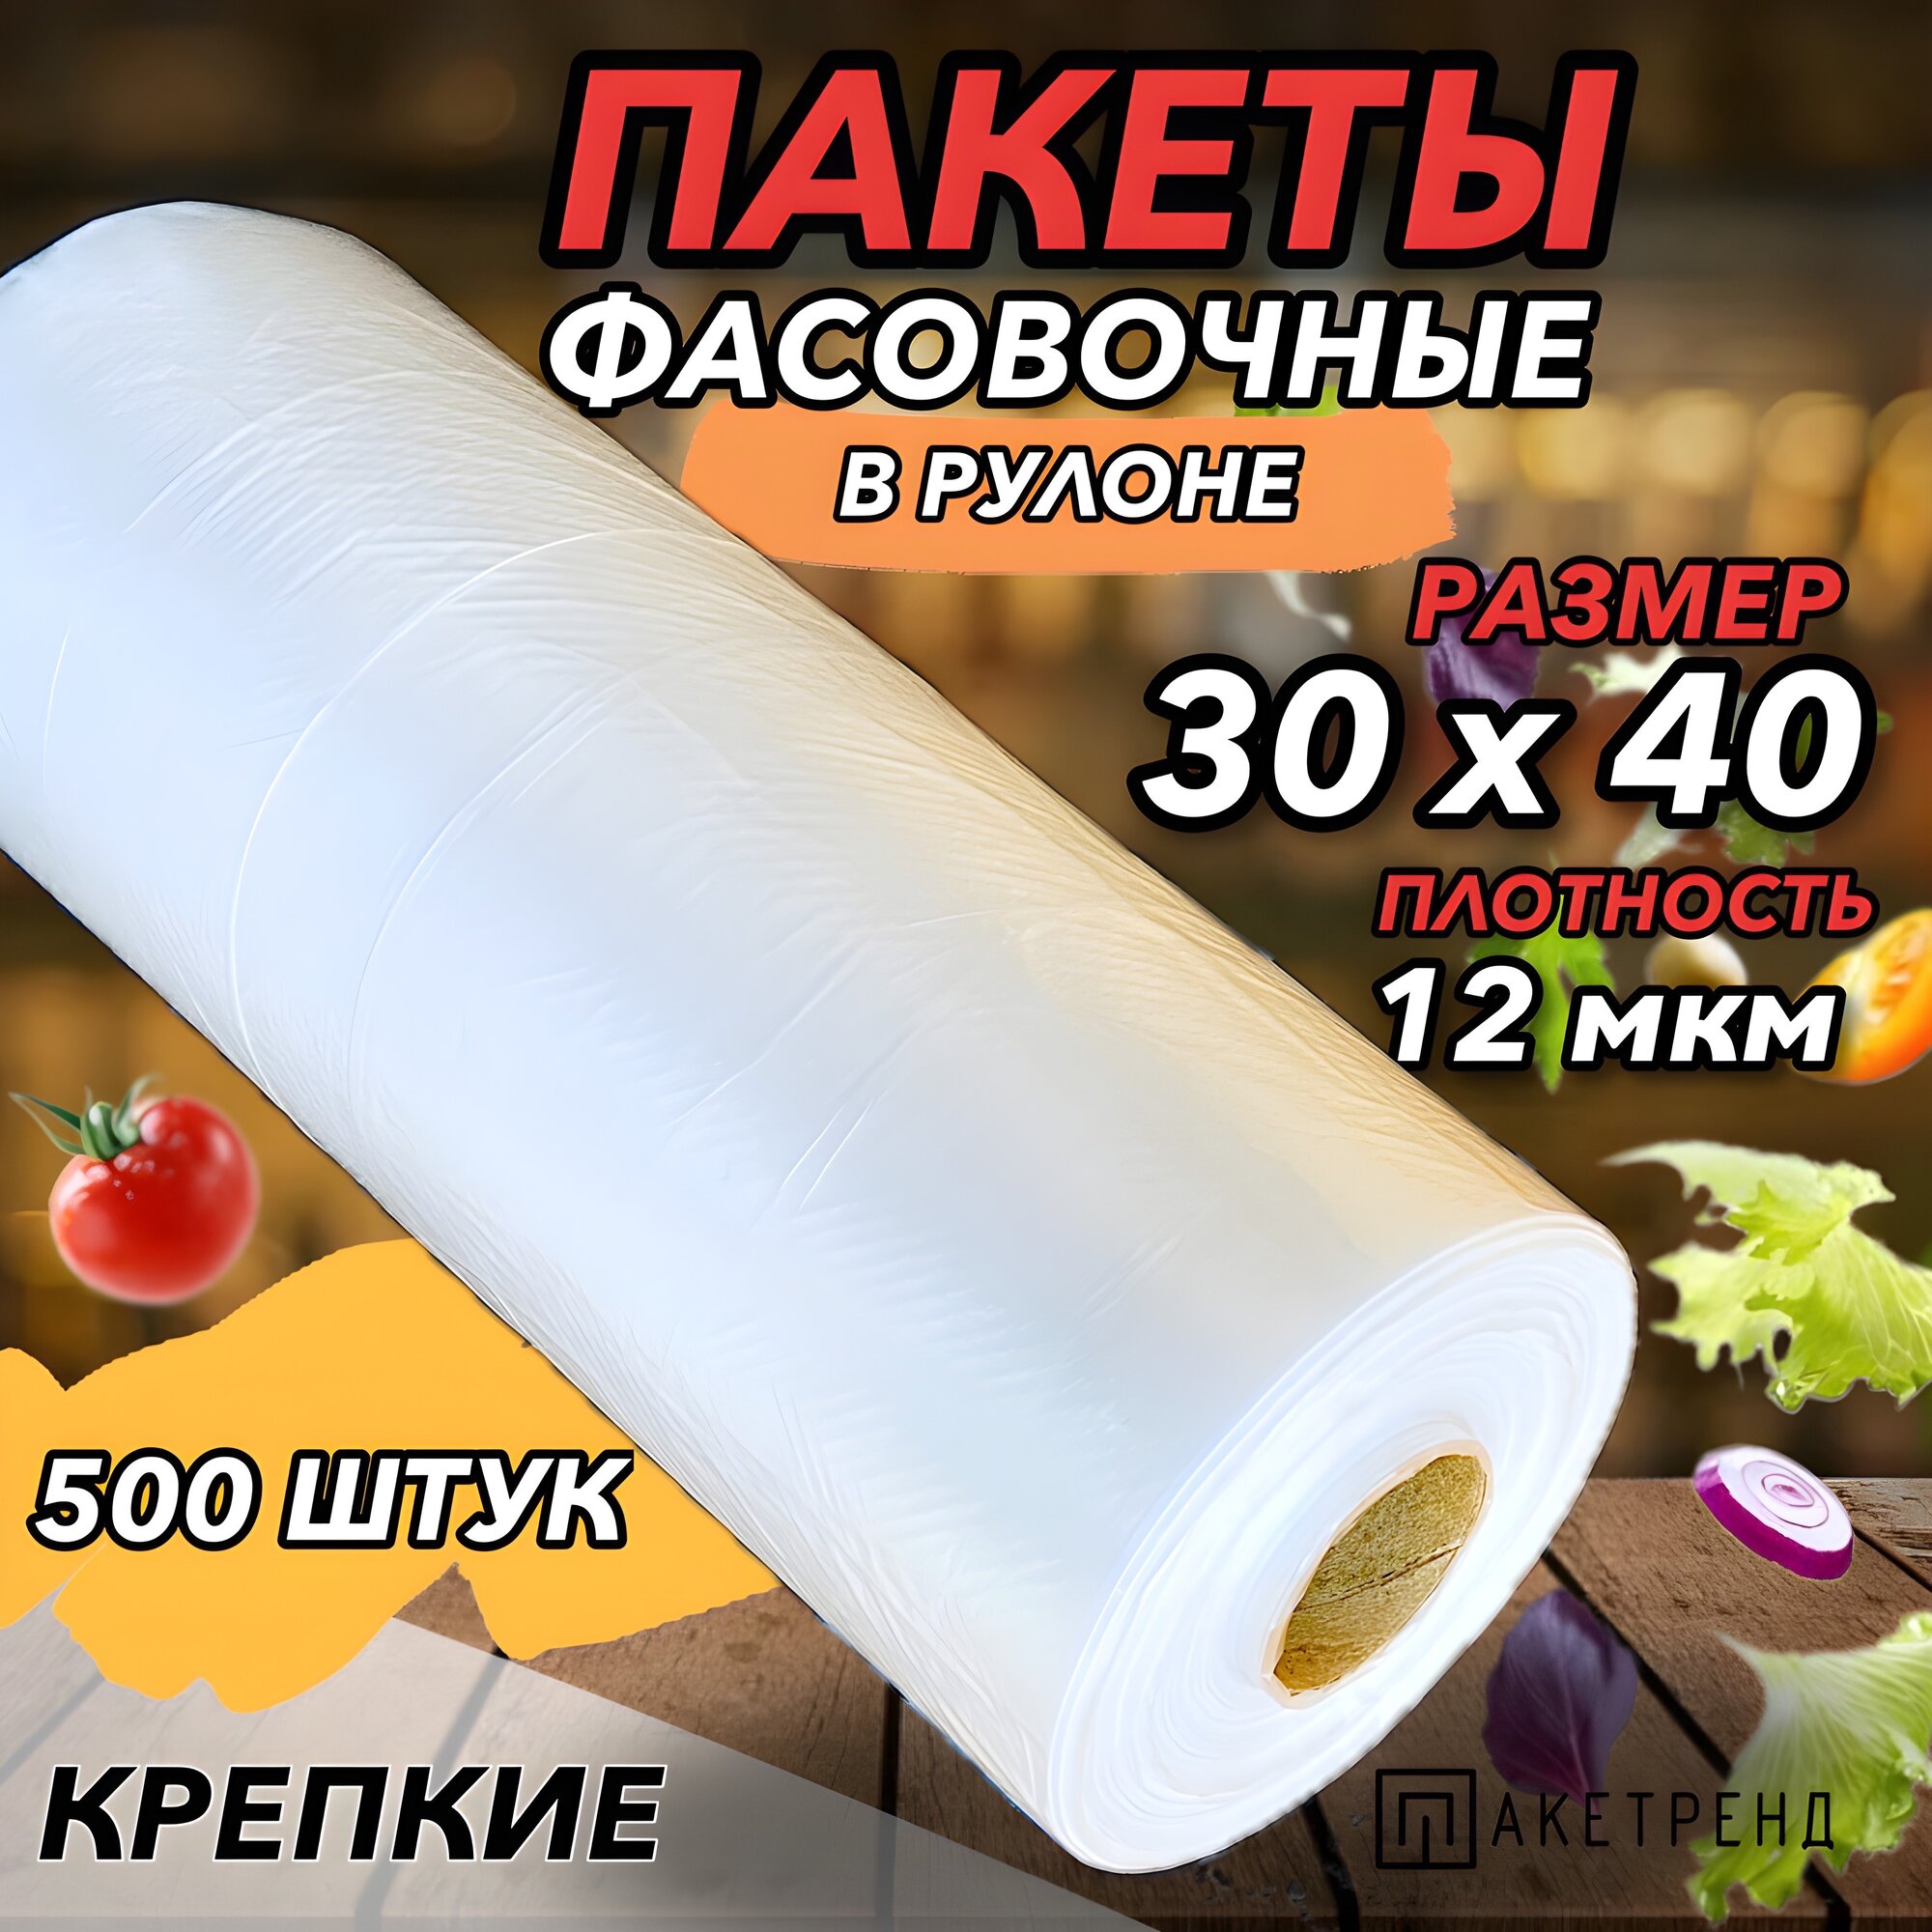 Пакеты фасовочные 30х40 500 штук 12 мкм для упаковки продуктов, завтраков, овощей, заморозки мяса